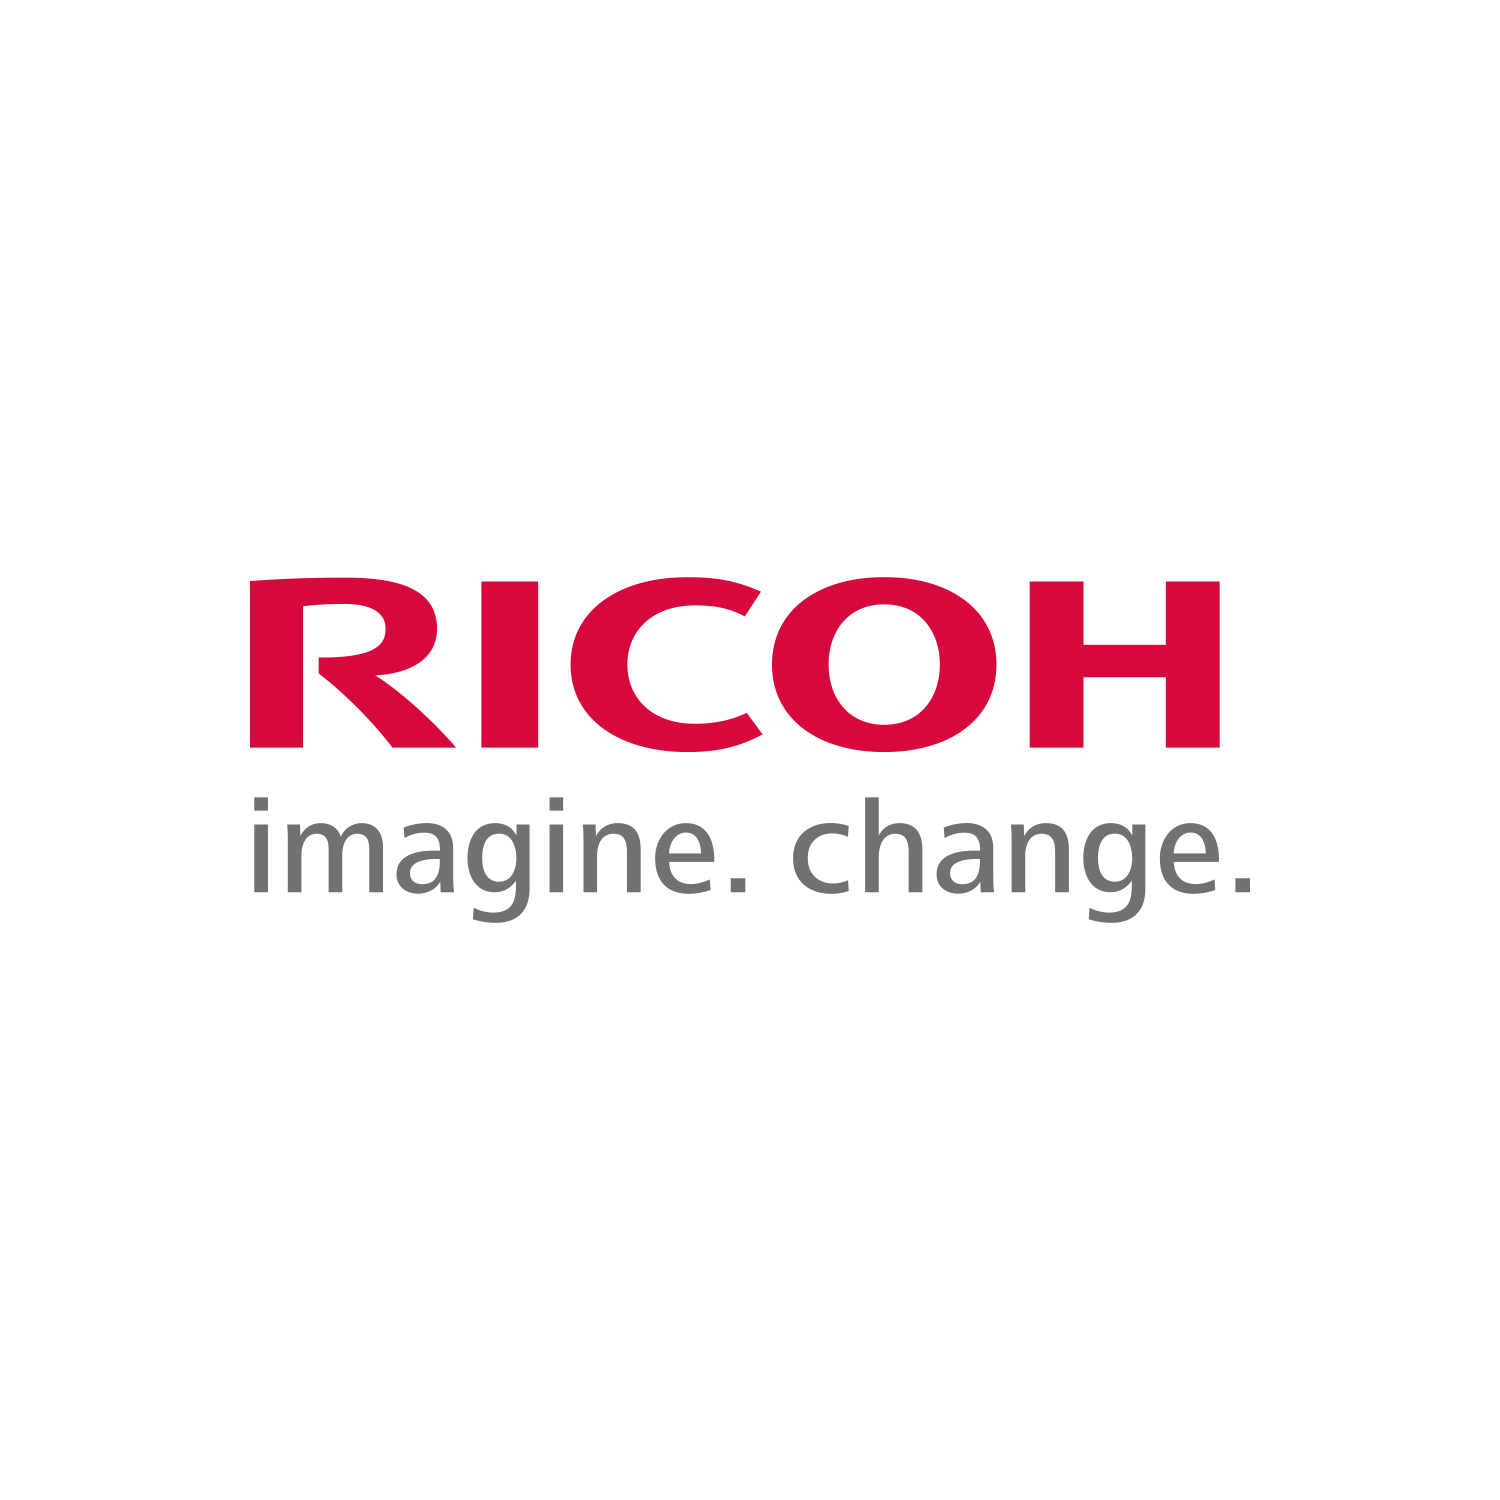 理光股份有限公司 Ricoh 是一家日本跨国成像和电子公司，总部位于东京中央区理光大厦。